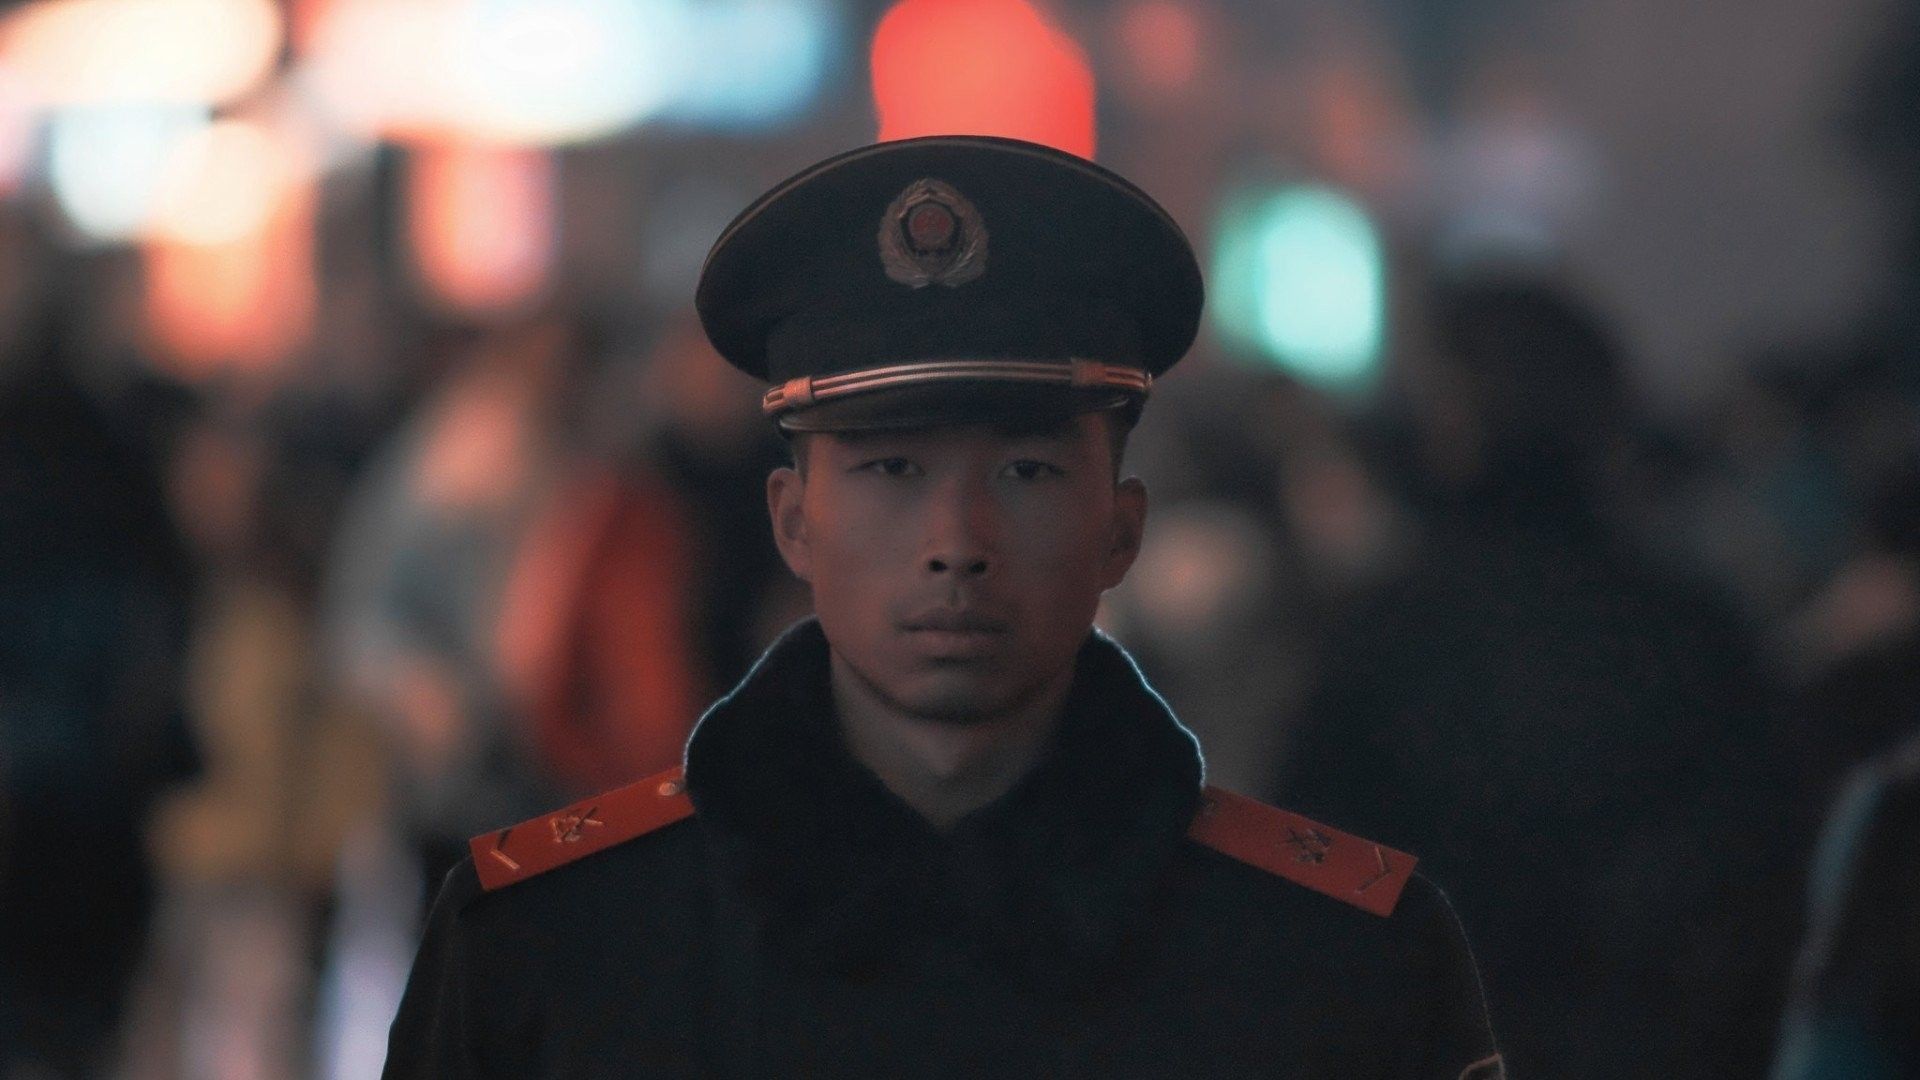 Chiński rząd chce cenzurować swoich obywateli nawet poza granicami kraju